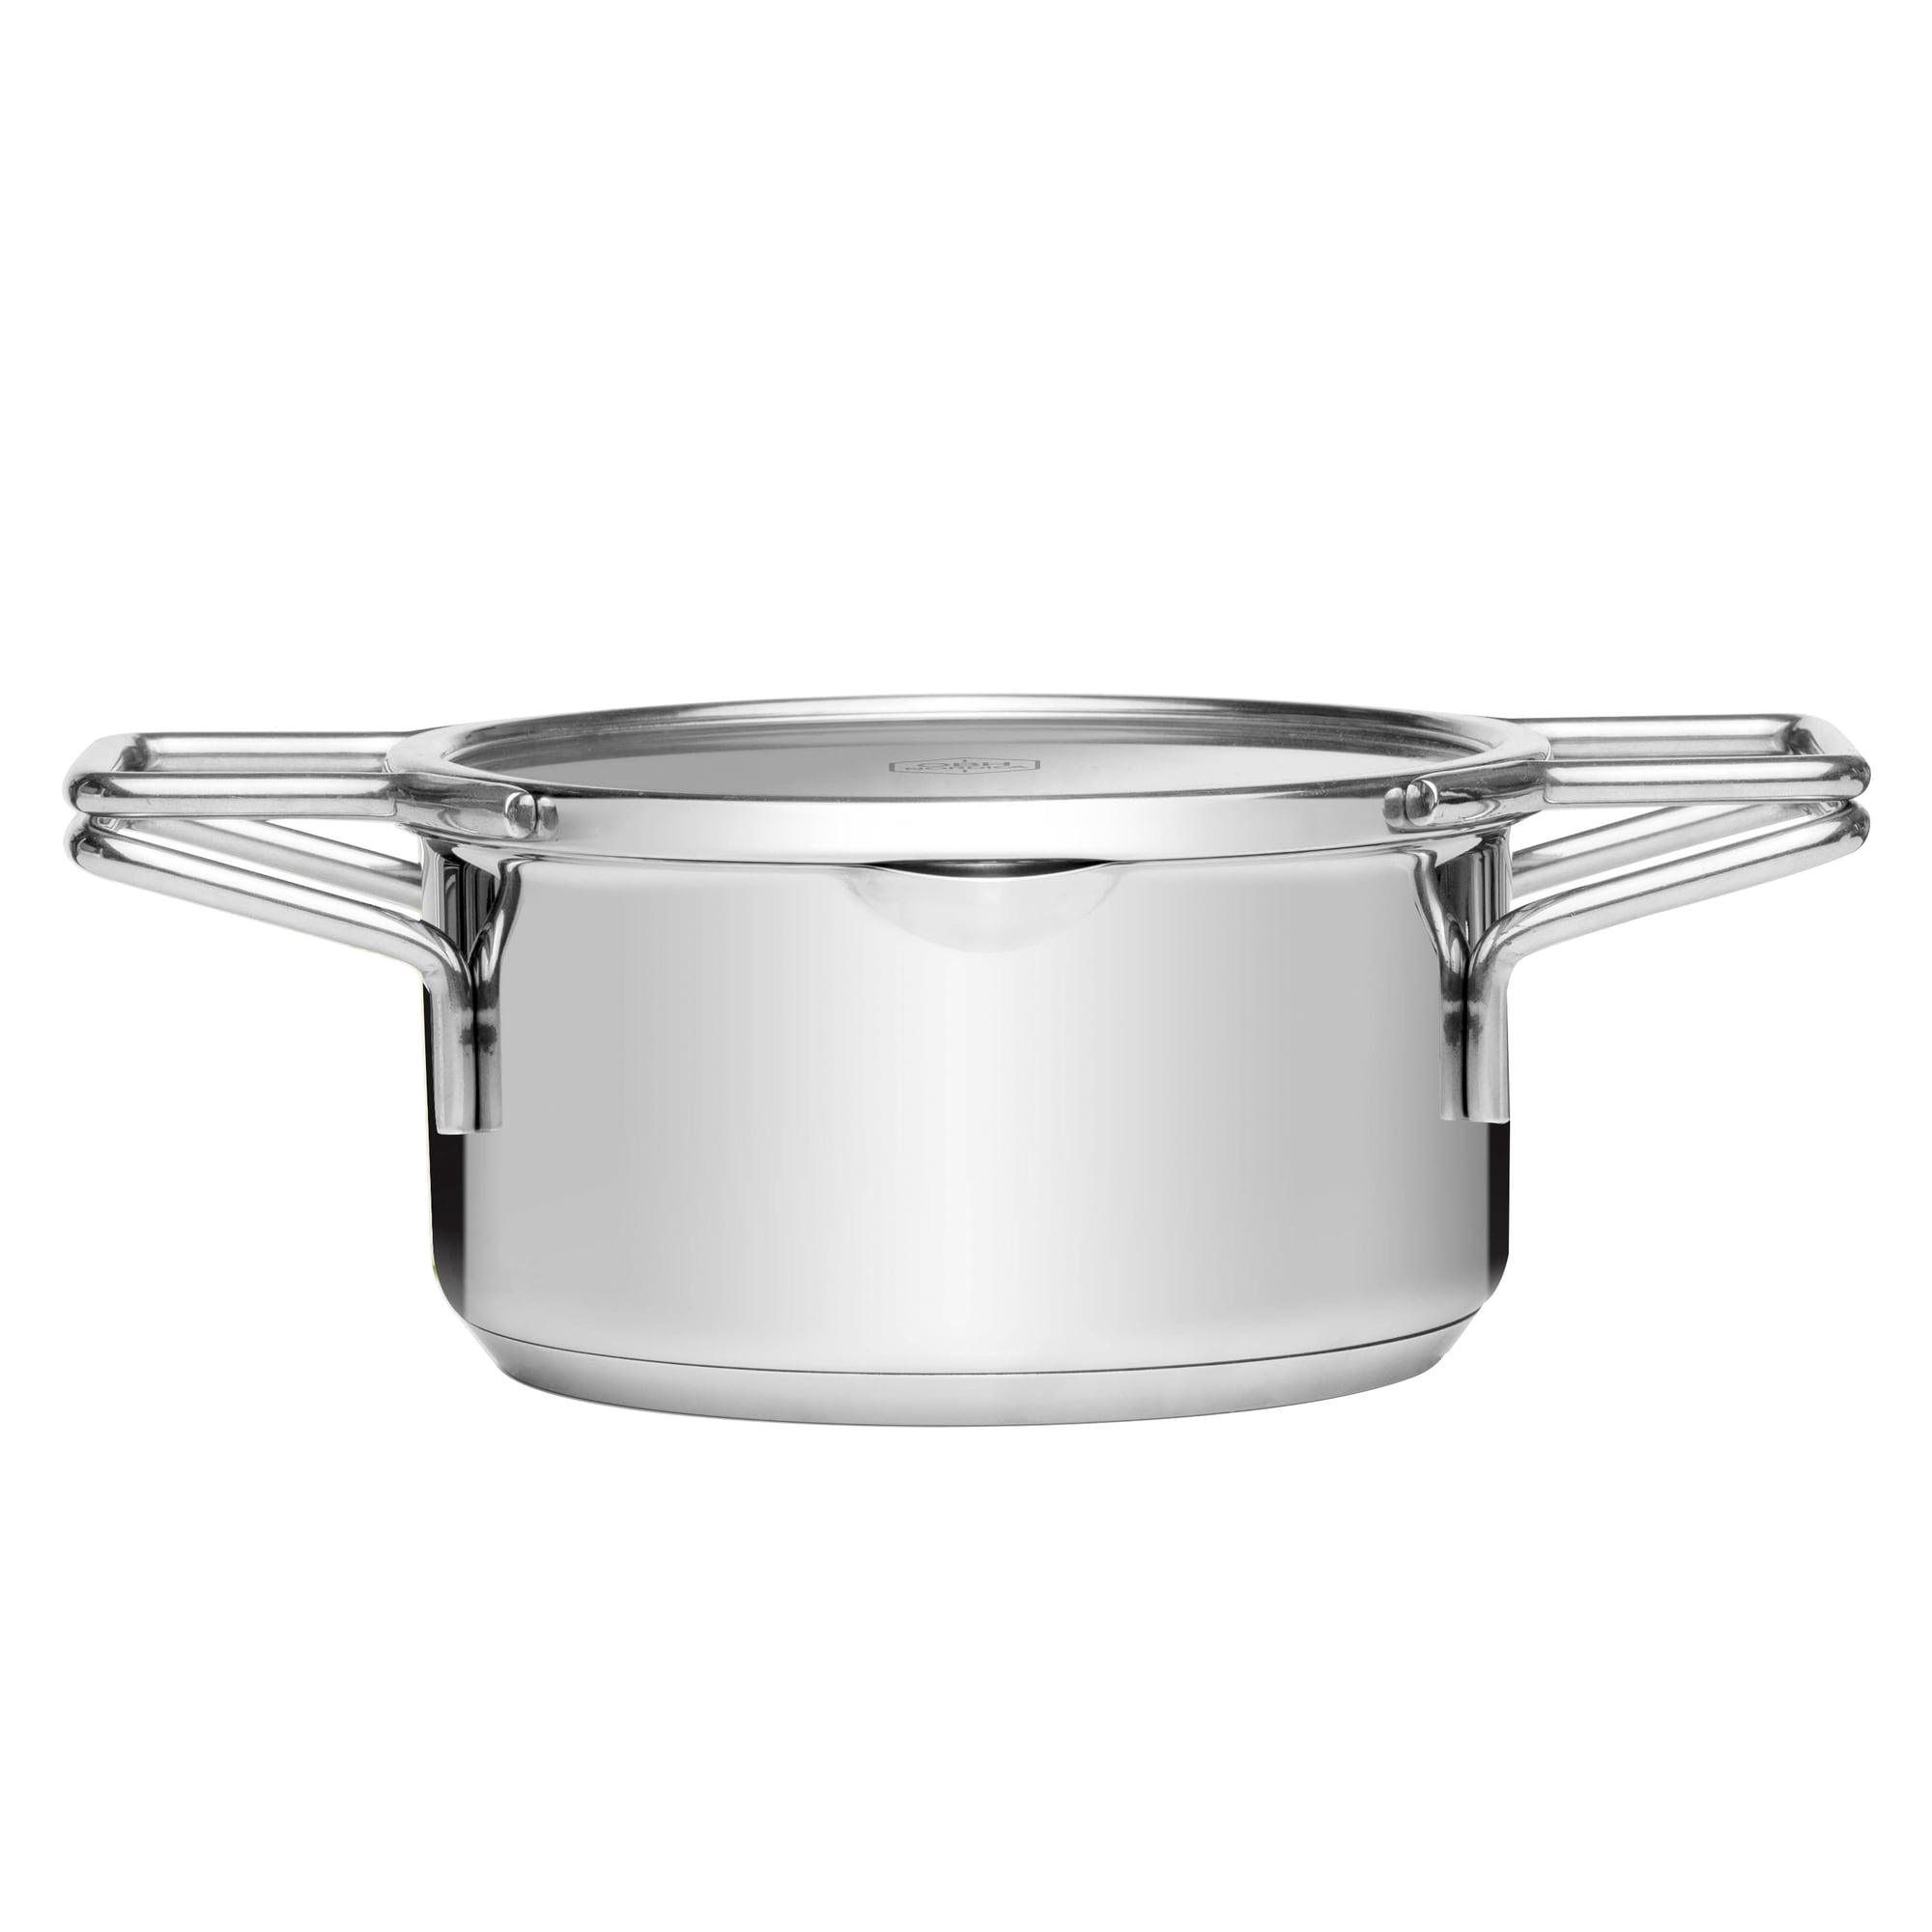 OBH Nordica C-Smart kasserolle 8100 | Elgiganten